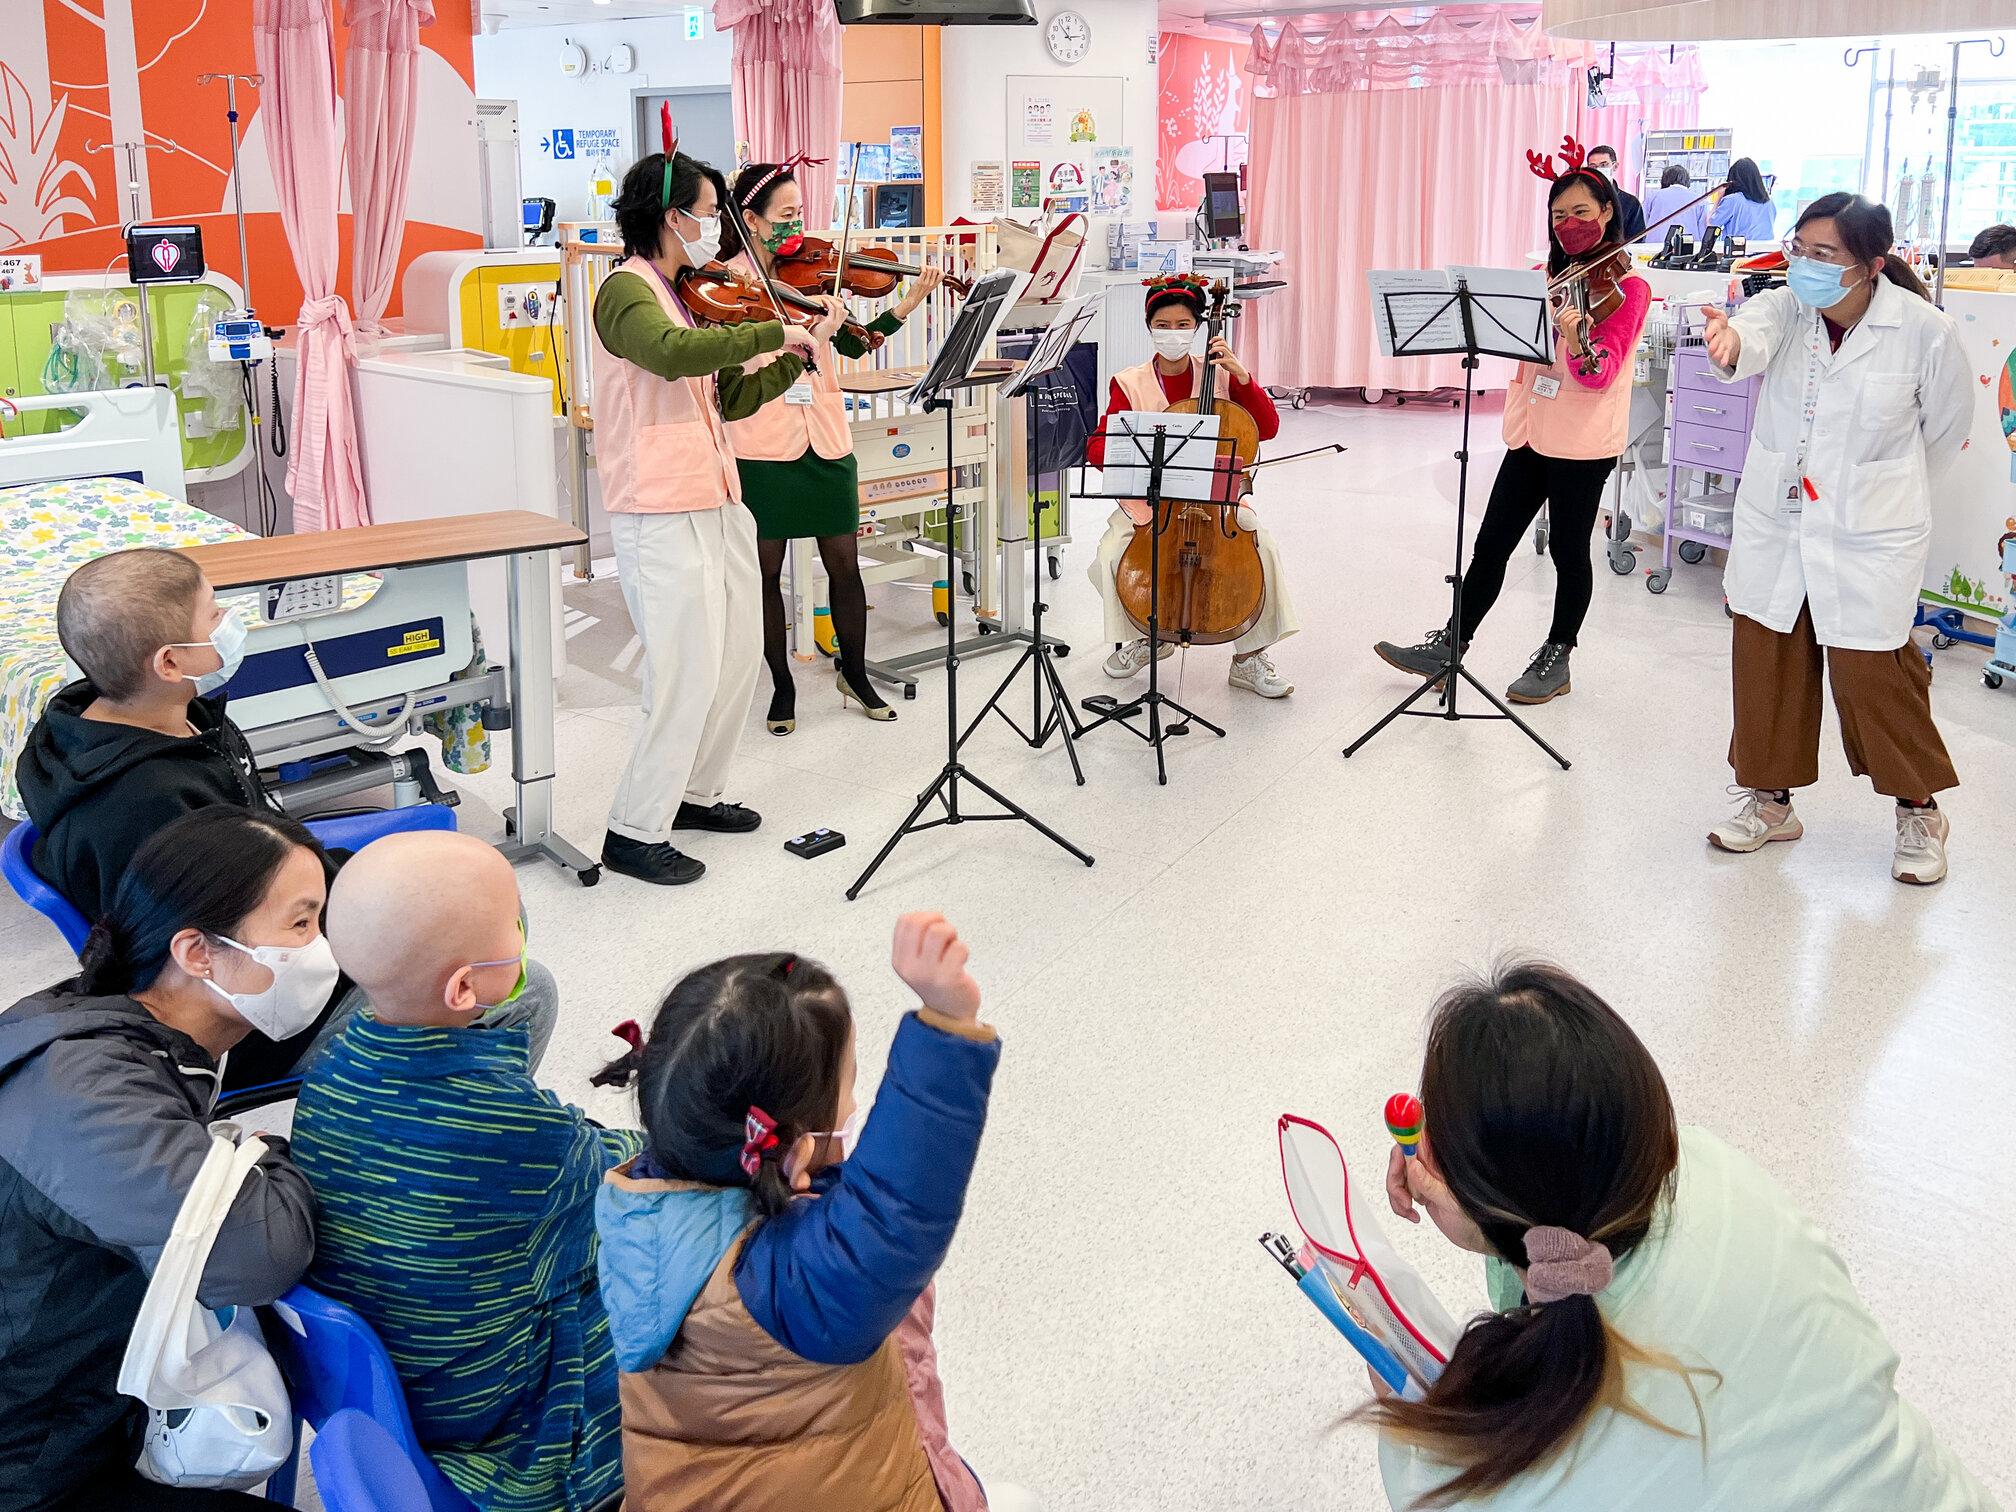 香港兒童醫院特意安排幾位專業樂手義工到病房演奏，讓病童在悠揚樂韻中感受節日氣氛。小朋友和家長聽到熟悉的聖誕歌都很高興。